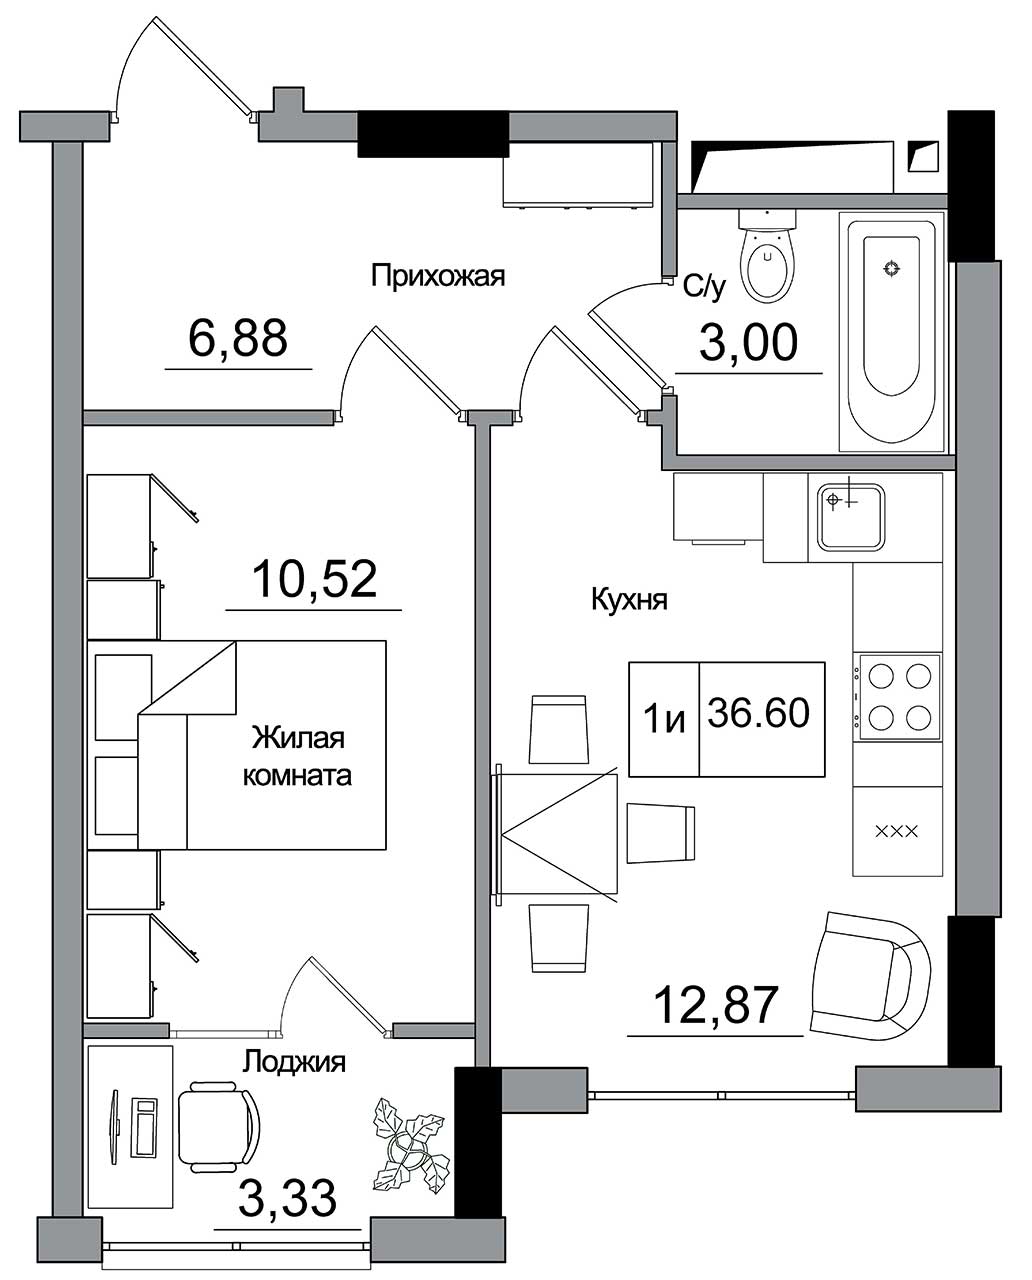 Планировка 1-к квартира площей 36.6м2, AB-16-04/00012.